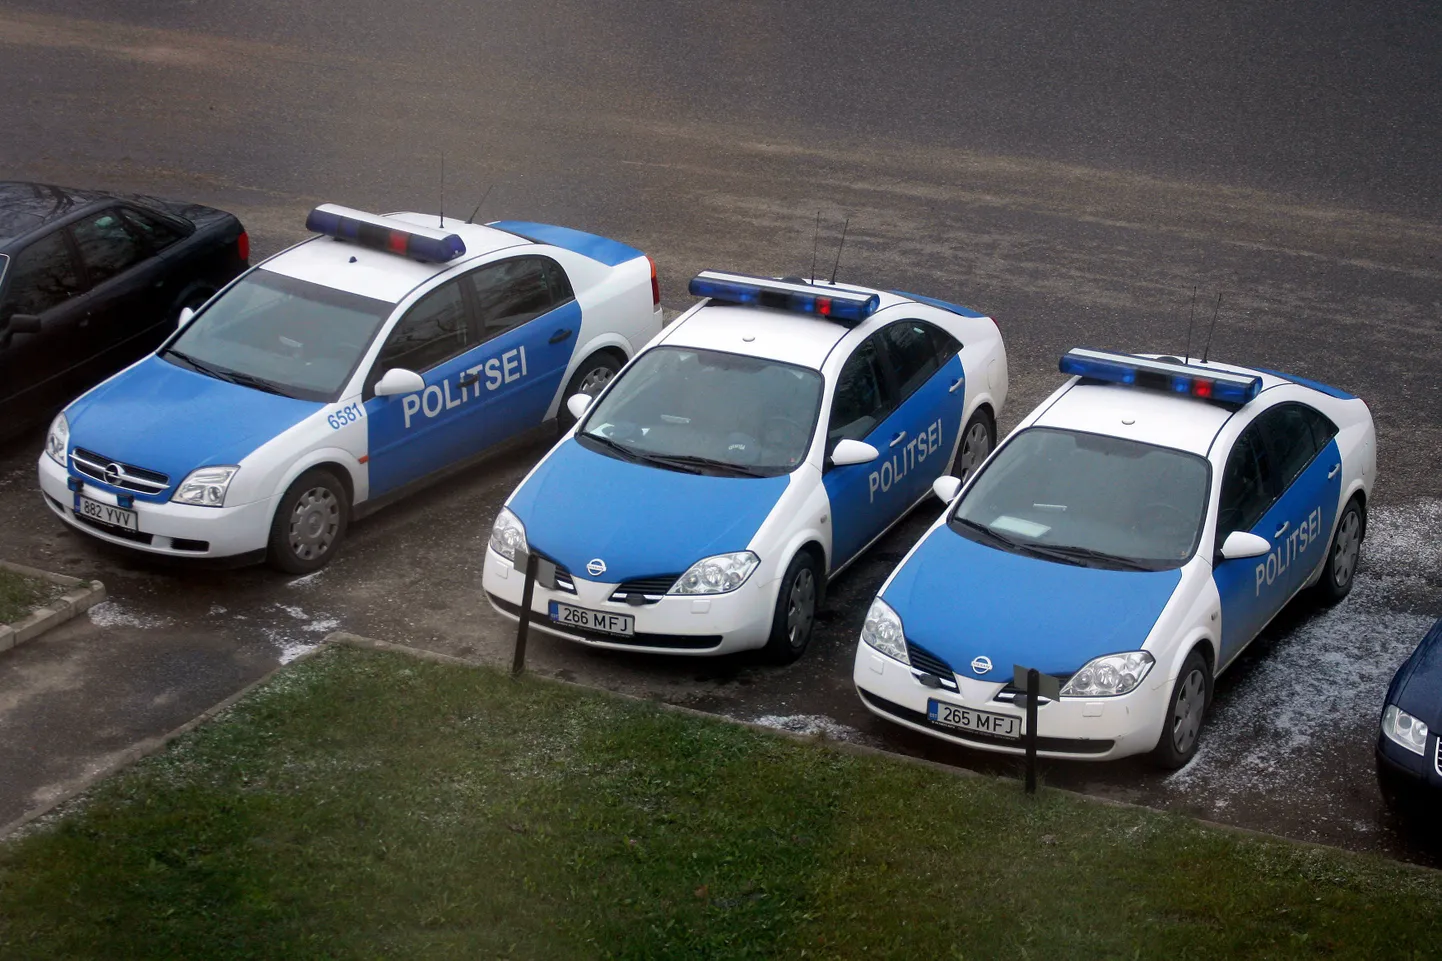 Полицейские машины